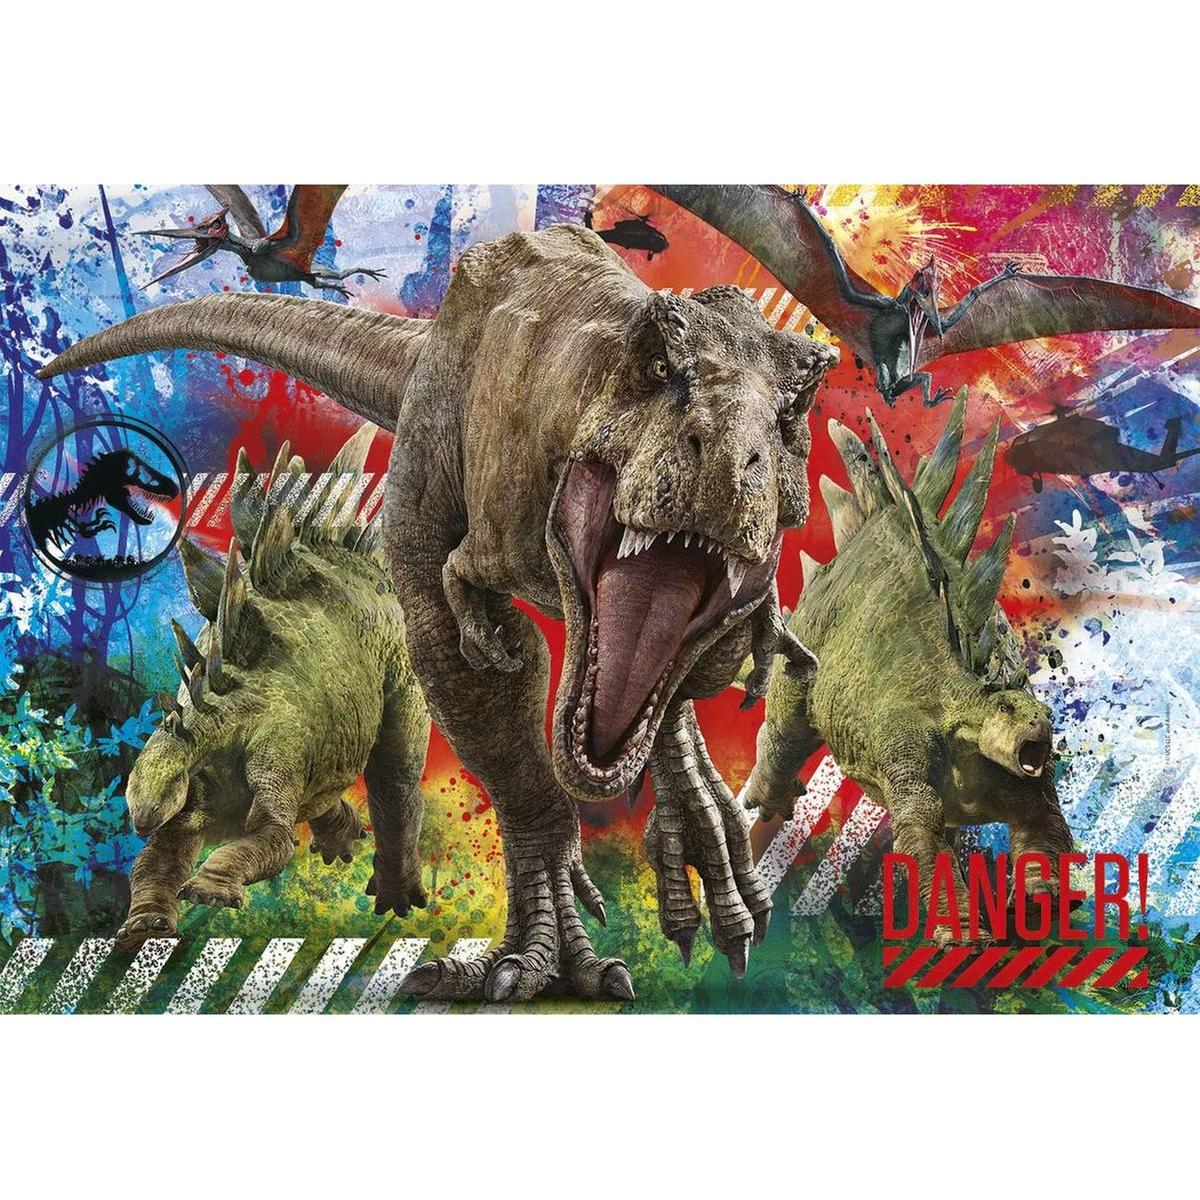 Clementoni - Jurassic World - Puzzle de dinosaurios Jurassic World 180  piezas ㅤ, Puzzle Hasta 49 Pzas